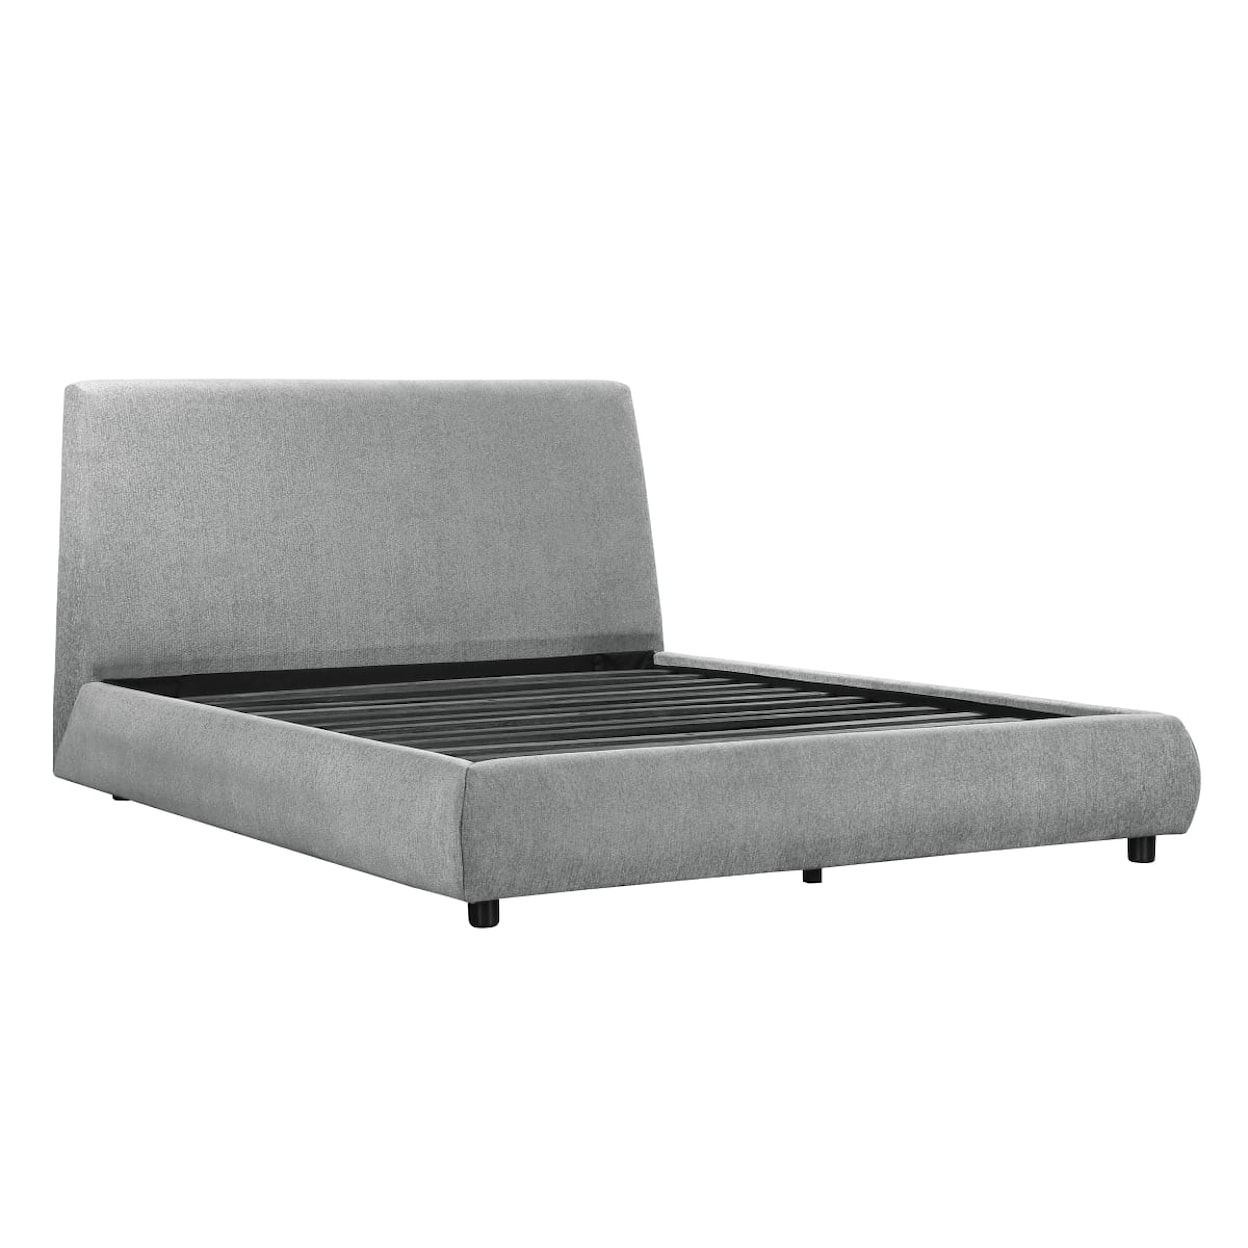 Homelegance Furniture Alford Queen Platform Bed